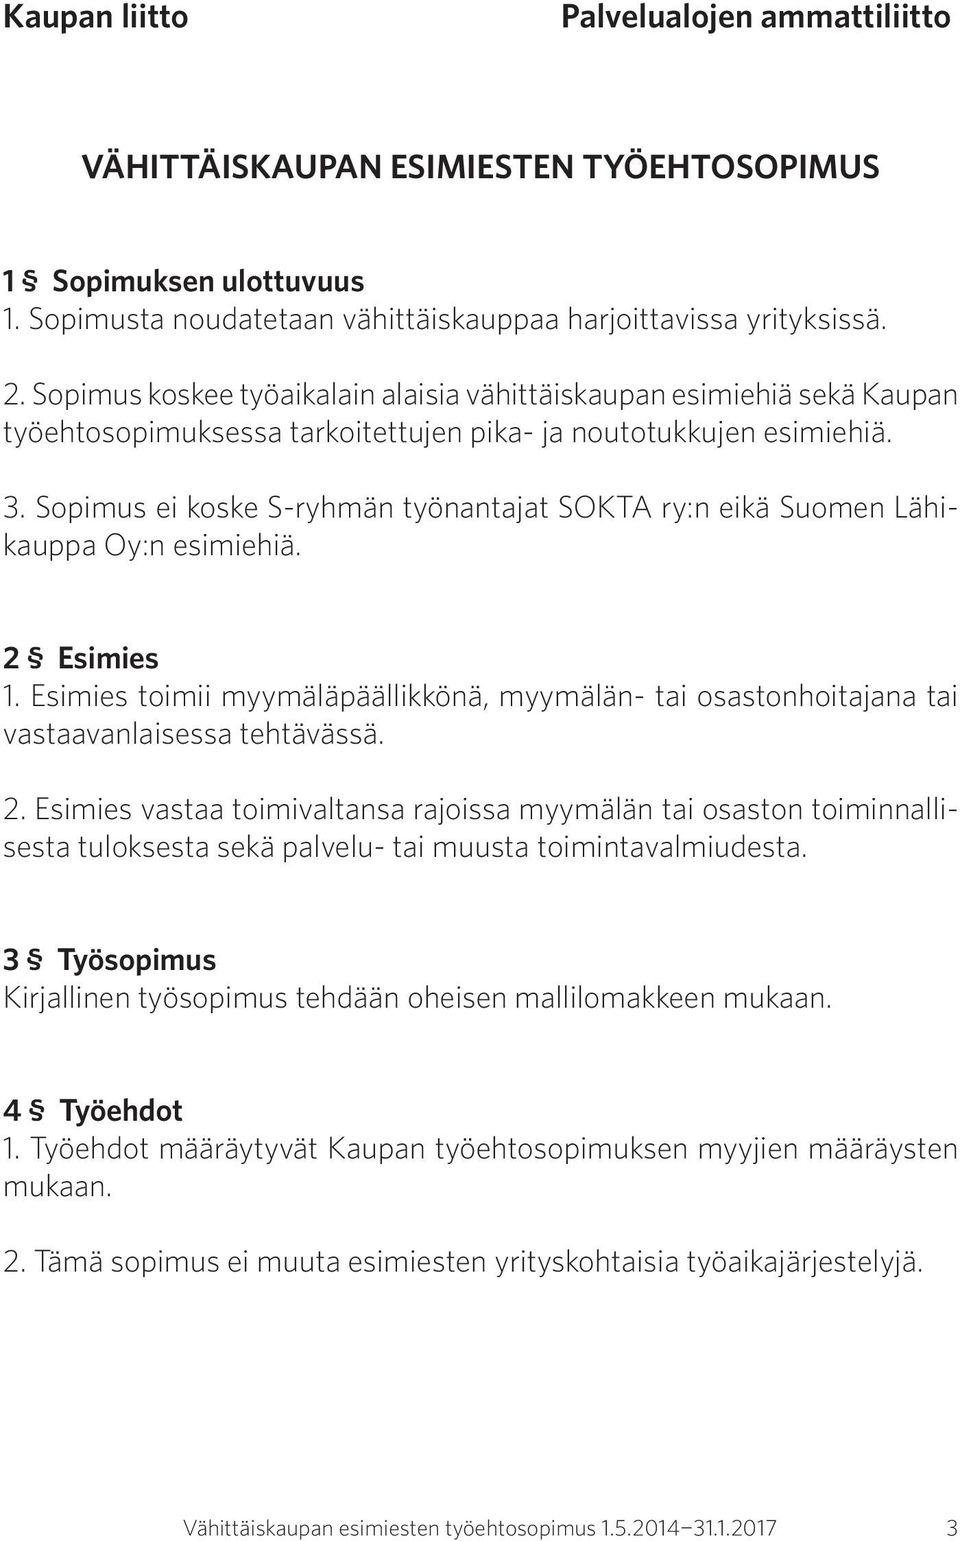 Sopimus ei koske S-ryhmän työnantajat SOKTA ry:n eikä Suomen Lähikauppa Oy:n esimiehiä. 2 Esimies 1. Esimies toimii myymäläpäällikkönä, myymälän- tai osastonhoitajana tai vastaavanlaisessa tehtävässä.